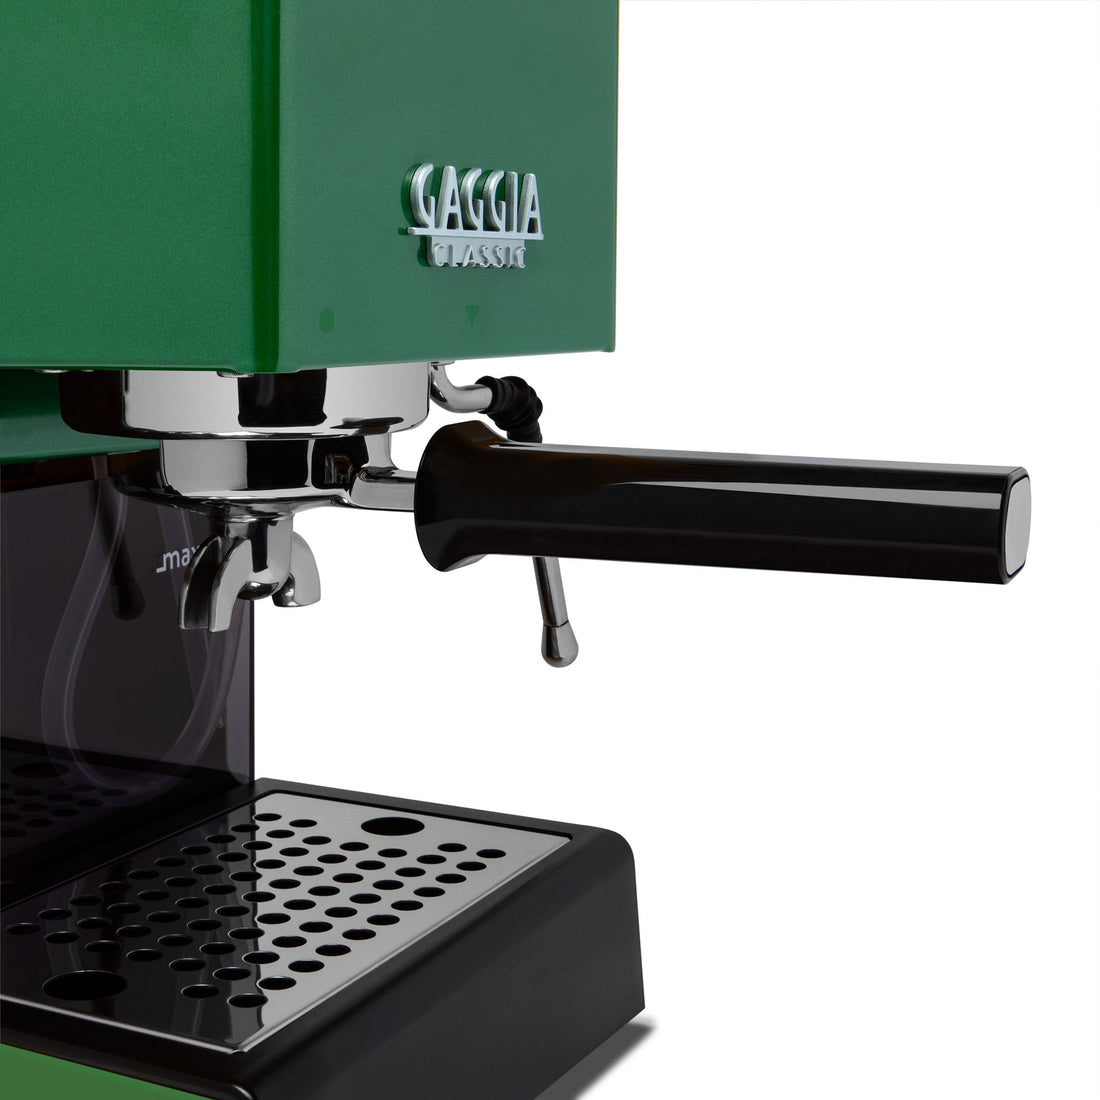 Gaggia Classic Evo Pro Espresso Machine in Jungle Green with Walnut